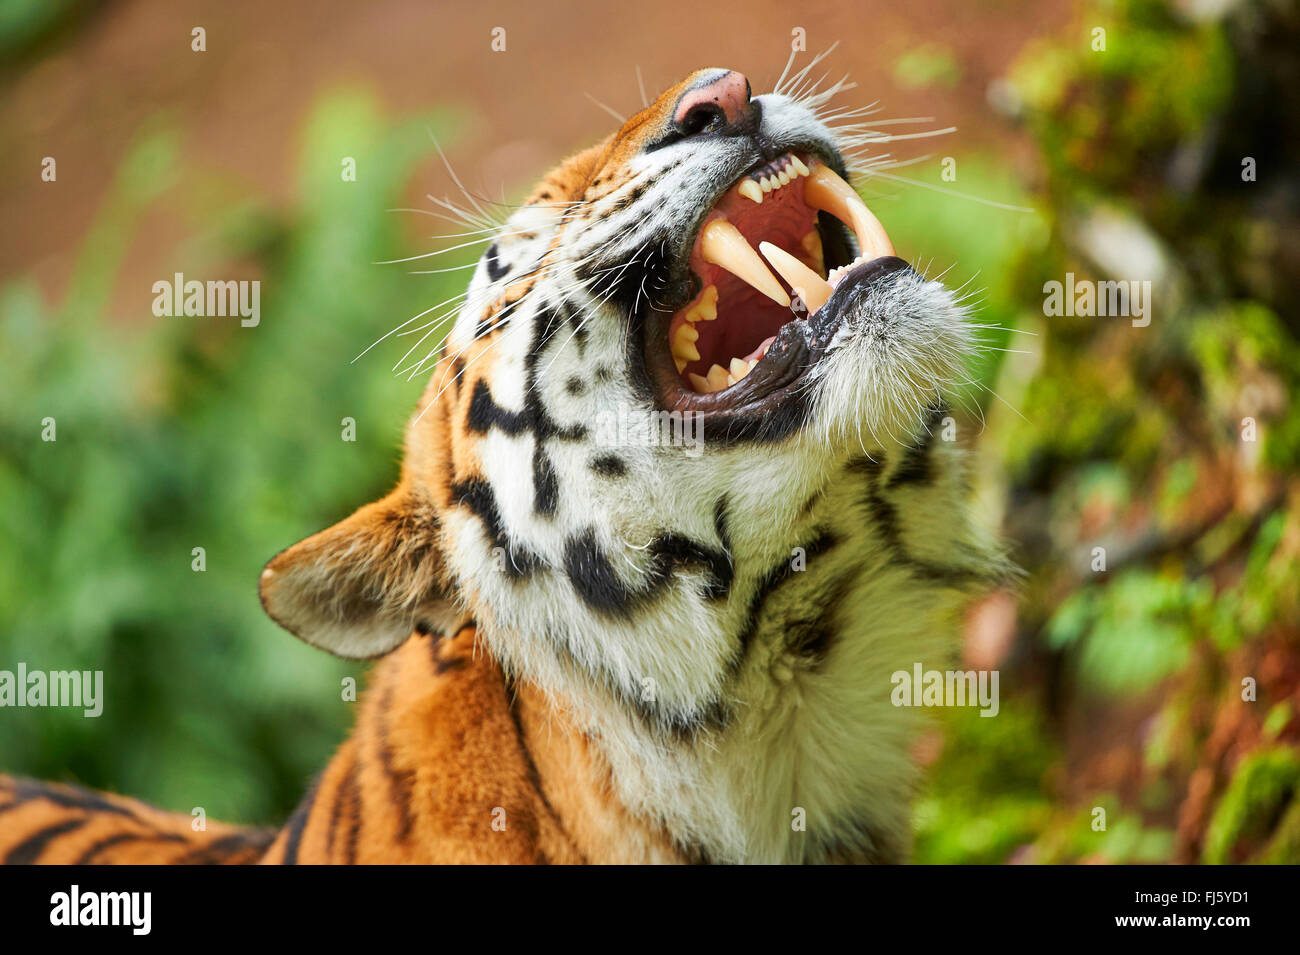 Siberian tiger, Amurian tiger (Panthera tigris altaica), roaring tiger Stock Photo